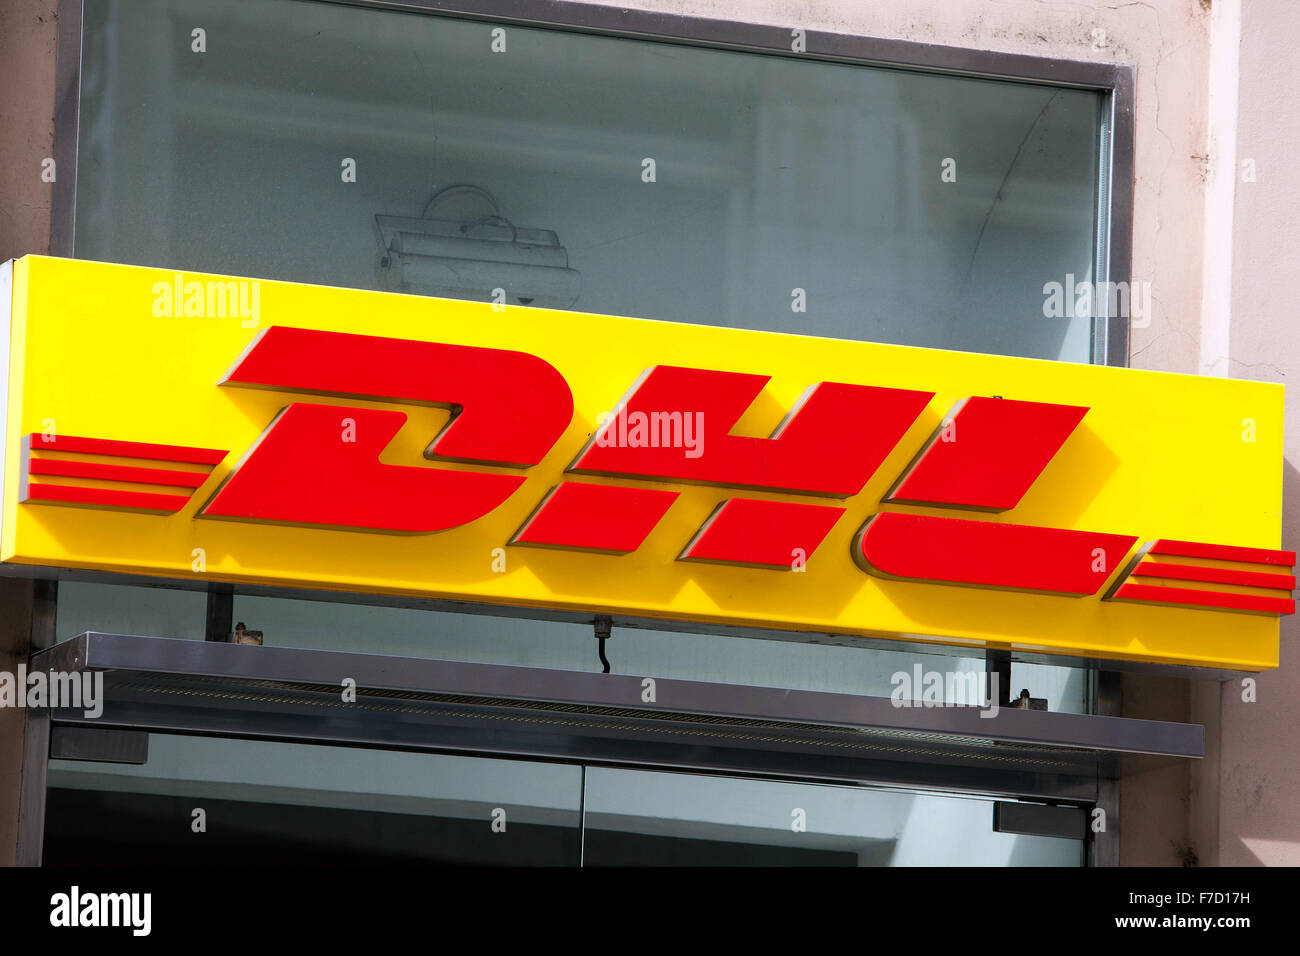 Service de livraison DHL signe, République Tchèque Banque D'Images